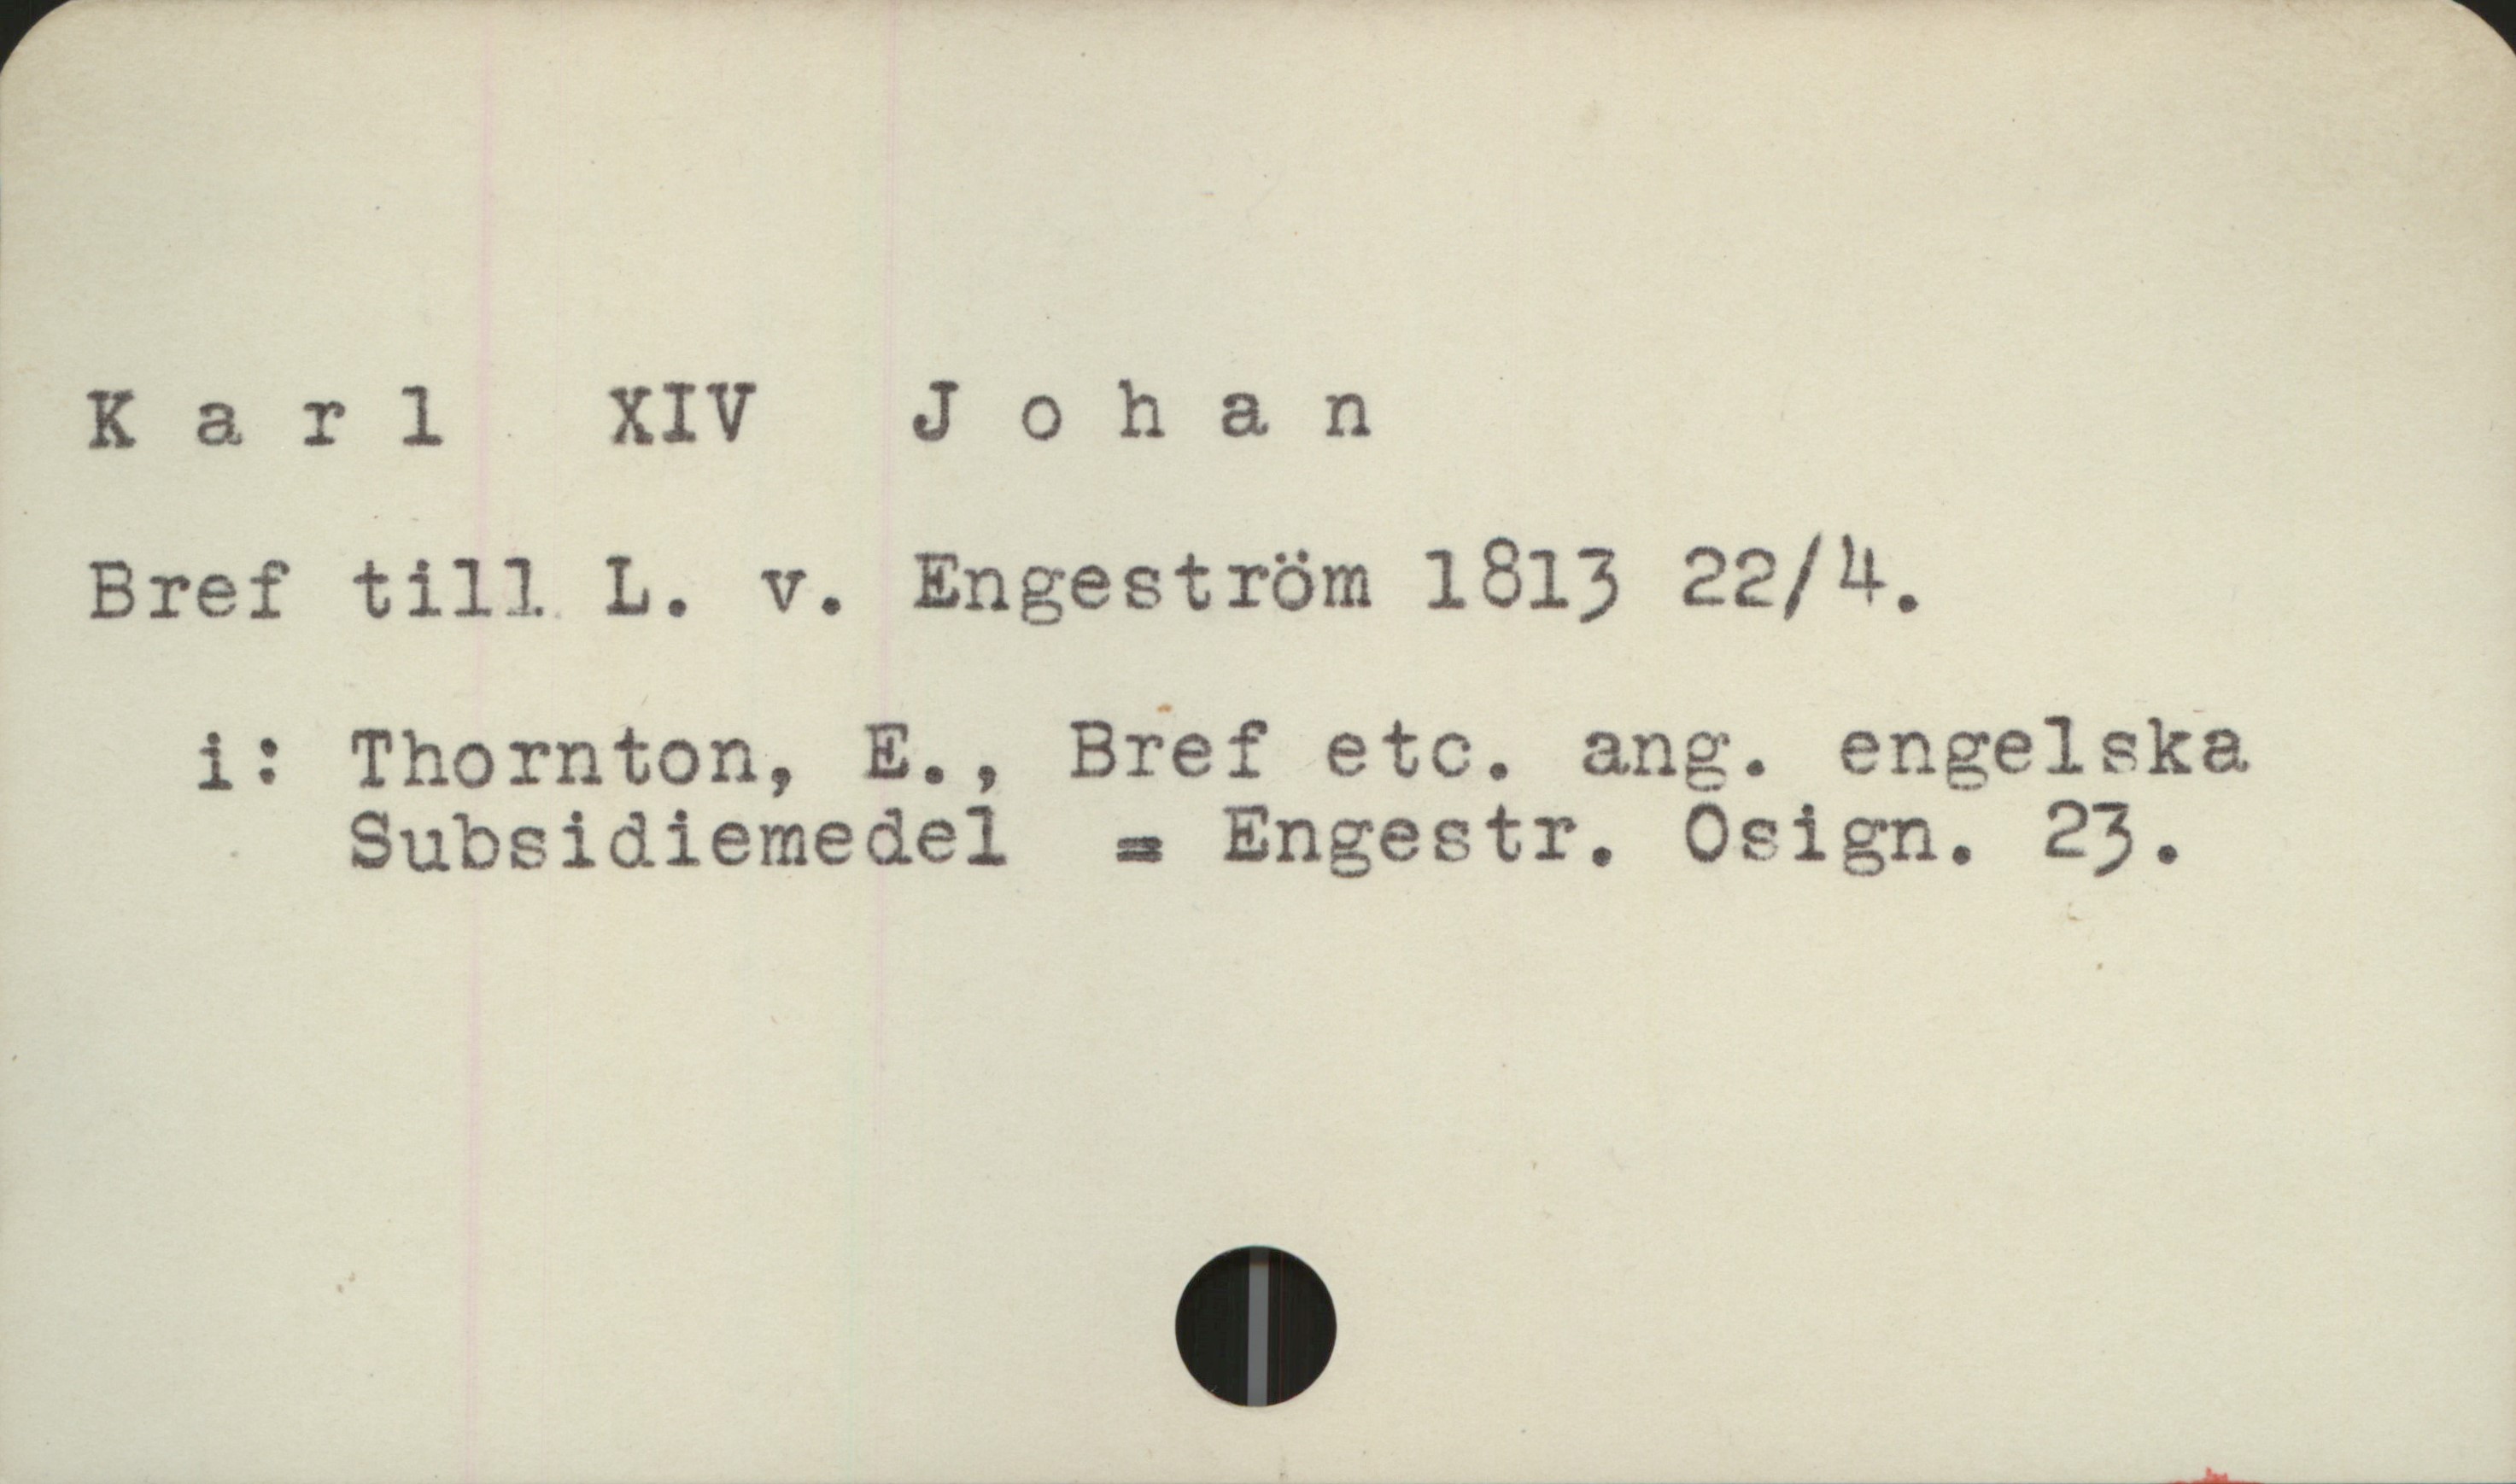  Karl XIV Johan
Bref till L. v. Engeström 1813 22/4,
i: Thornton, E., Bref etc. ang. engelska
Subsidiemedel = Engestr. Ocrign. 23.

